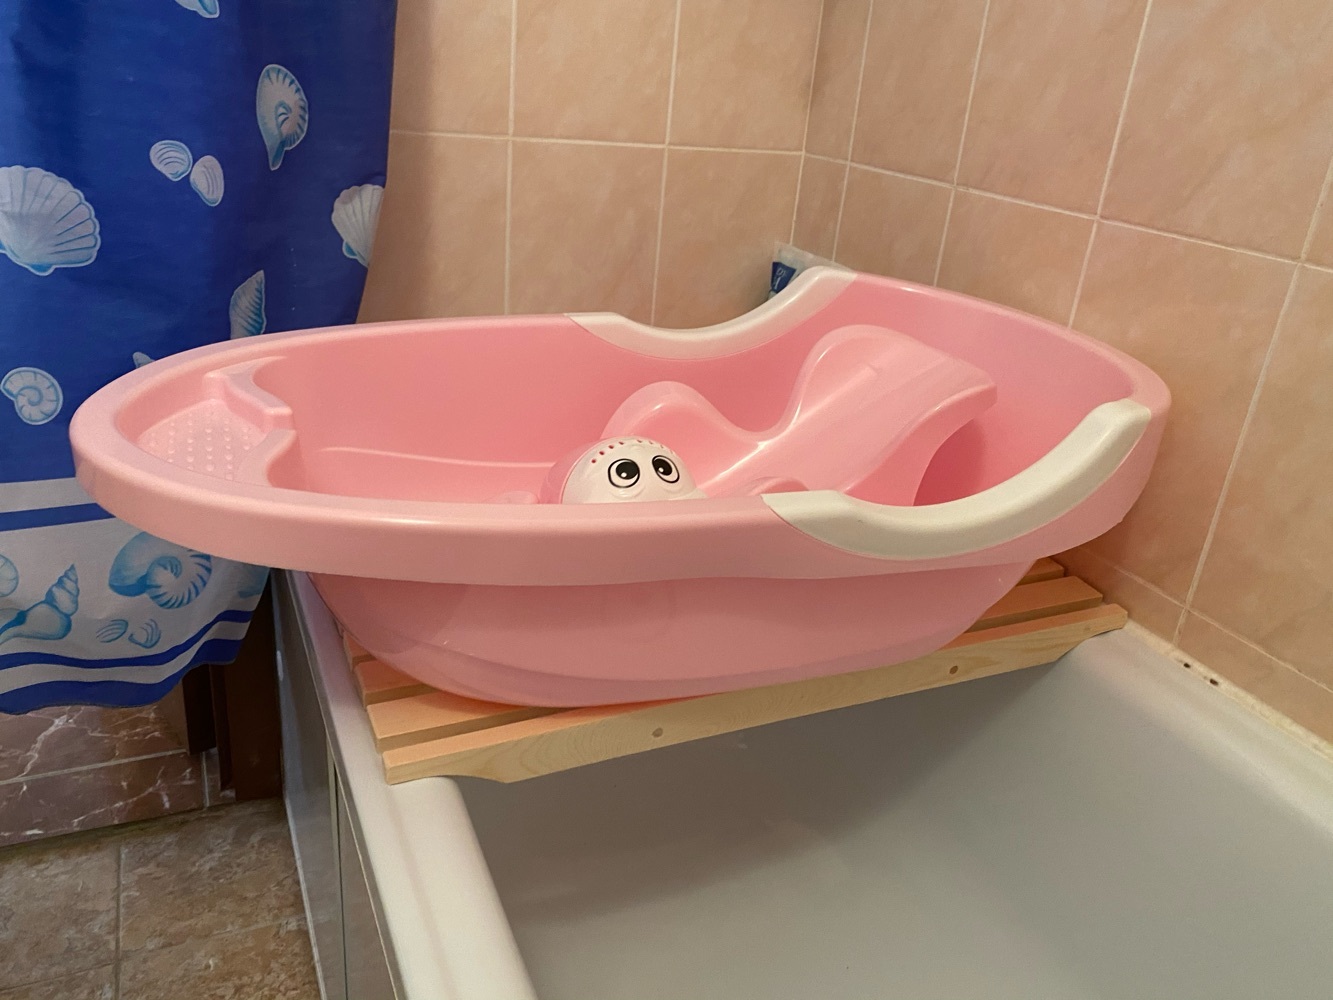 Авито ванночка для купания. Ванночка детская. Подставка на ванную для детской ванночки. Детская ванночка устанавливается на ванну. Детская ванночка с подставкой на ванну.